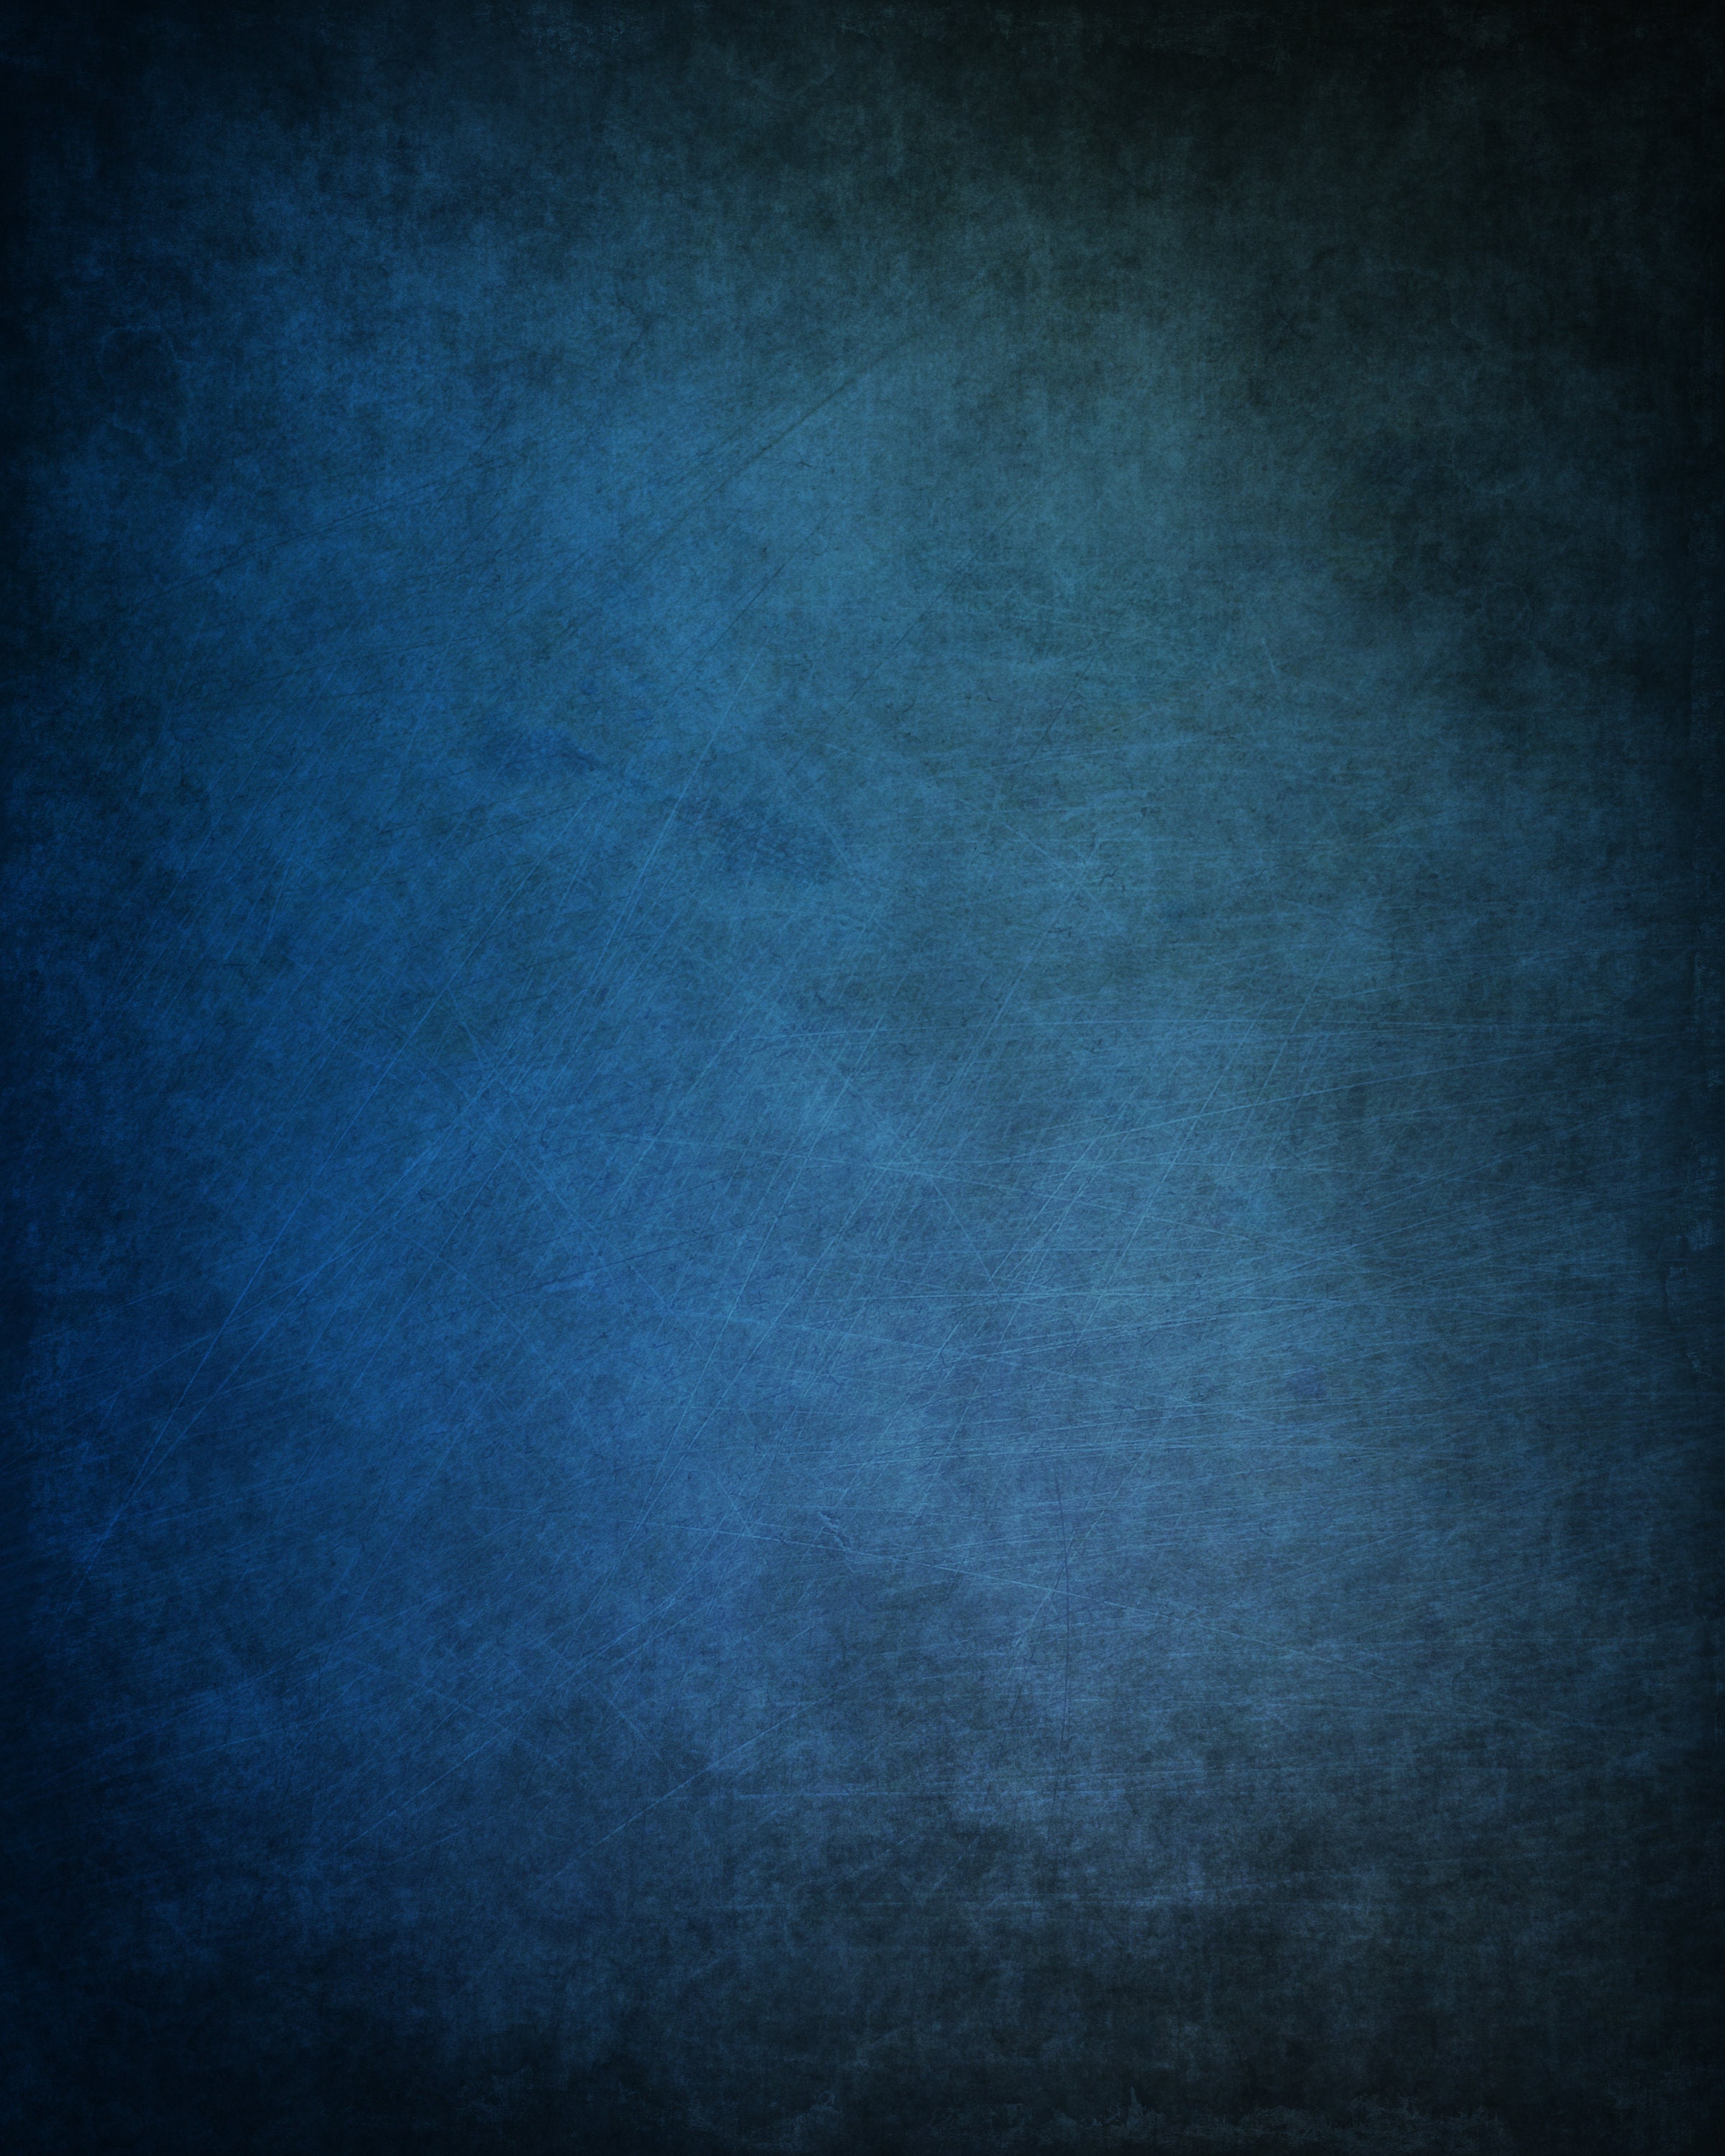 Blue Grunge Digital Background Photography Backdrop | Etsy